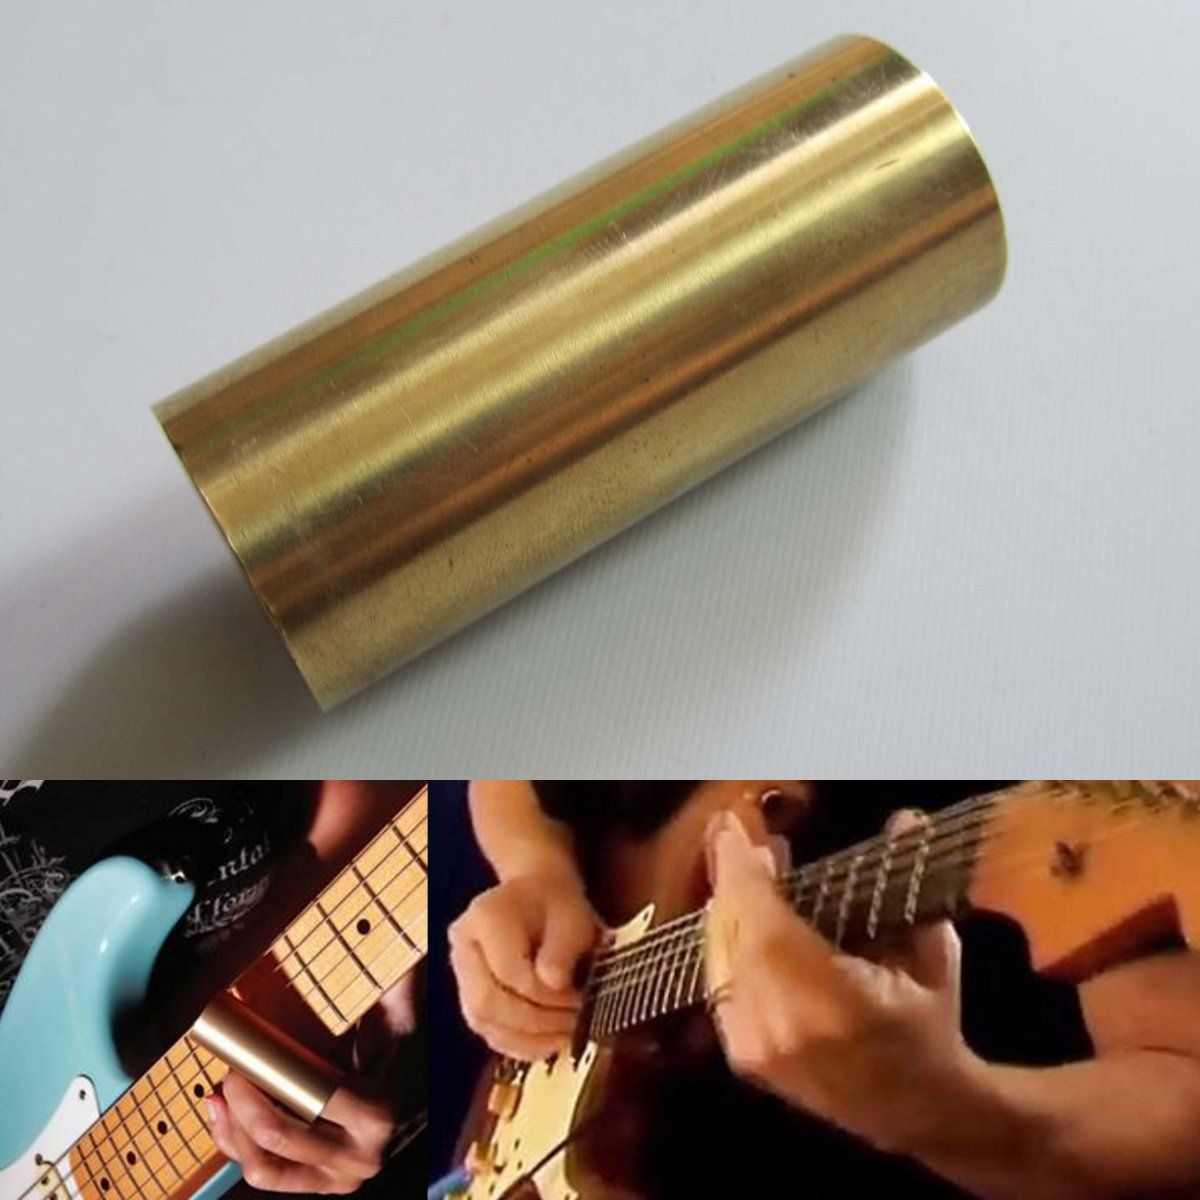 60mm-Brass-Guitar-Bass-Bruce-Finger-Knuckle-Slides-Parts-Musical-Accessories-1290867